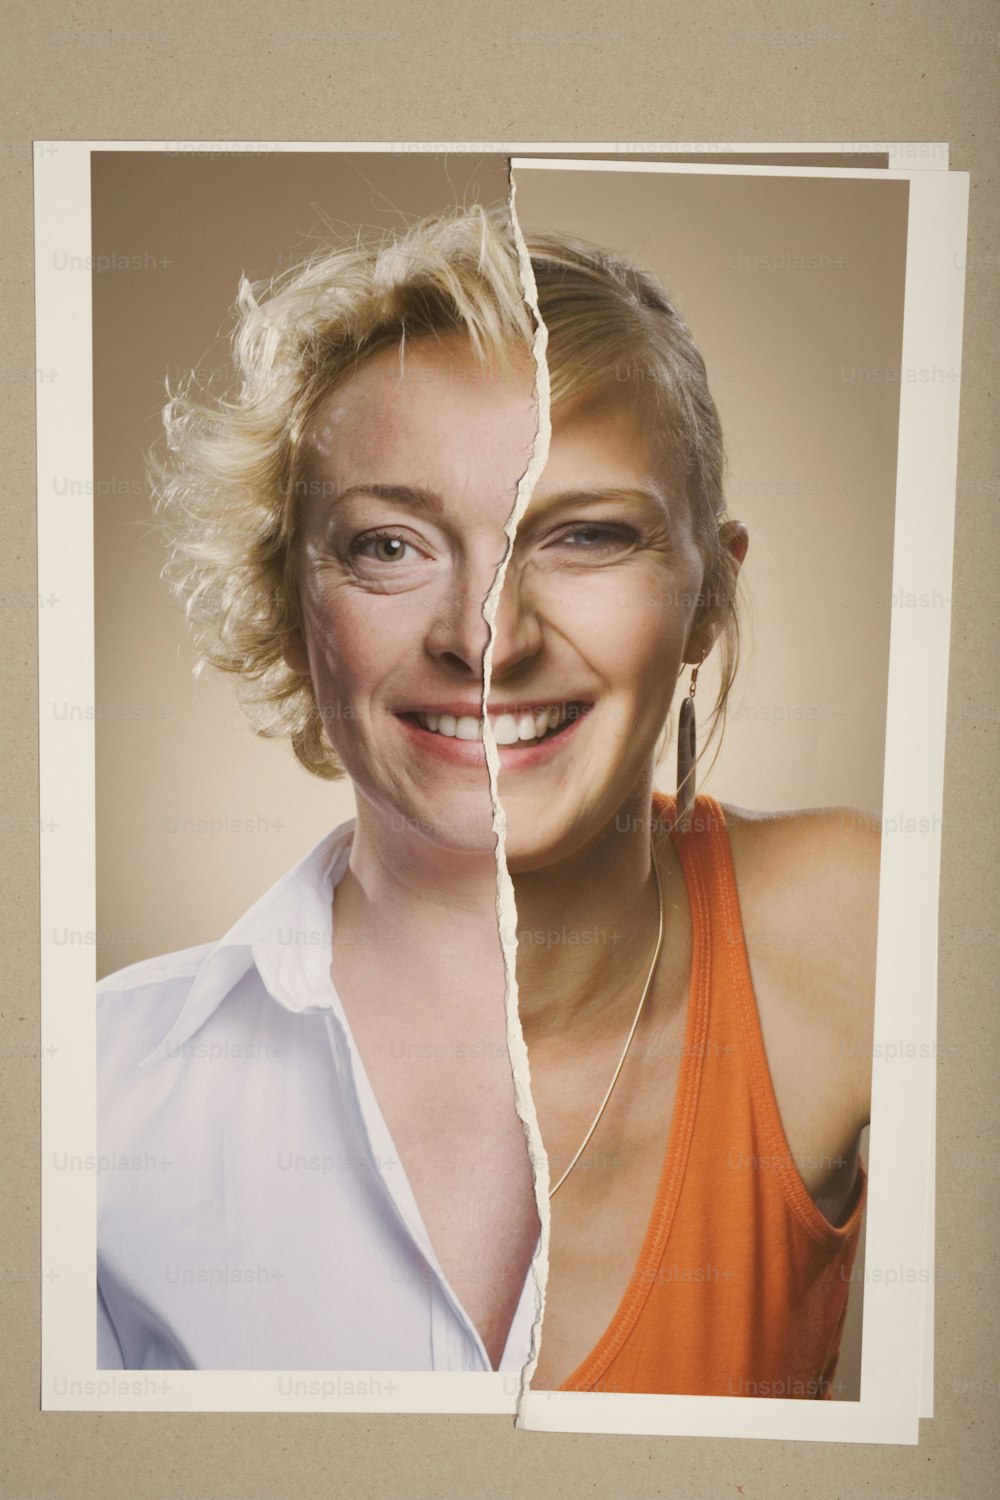 Eine Frau mit blonden Haaren und weißem Hemd hat ein zerrissenes Bild ihres Gesichts